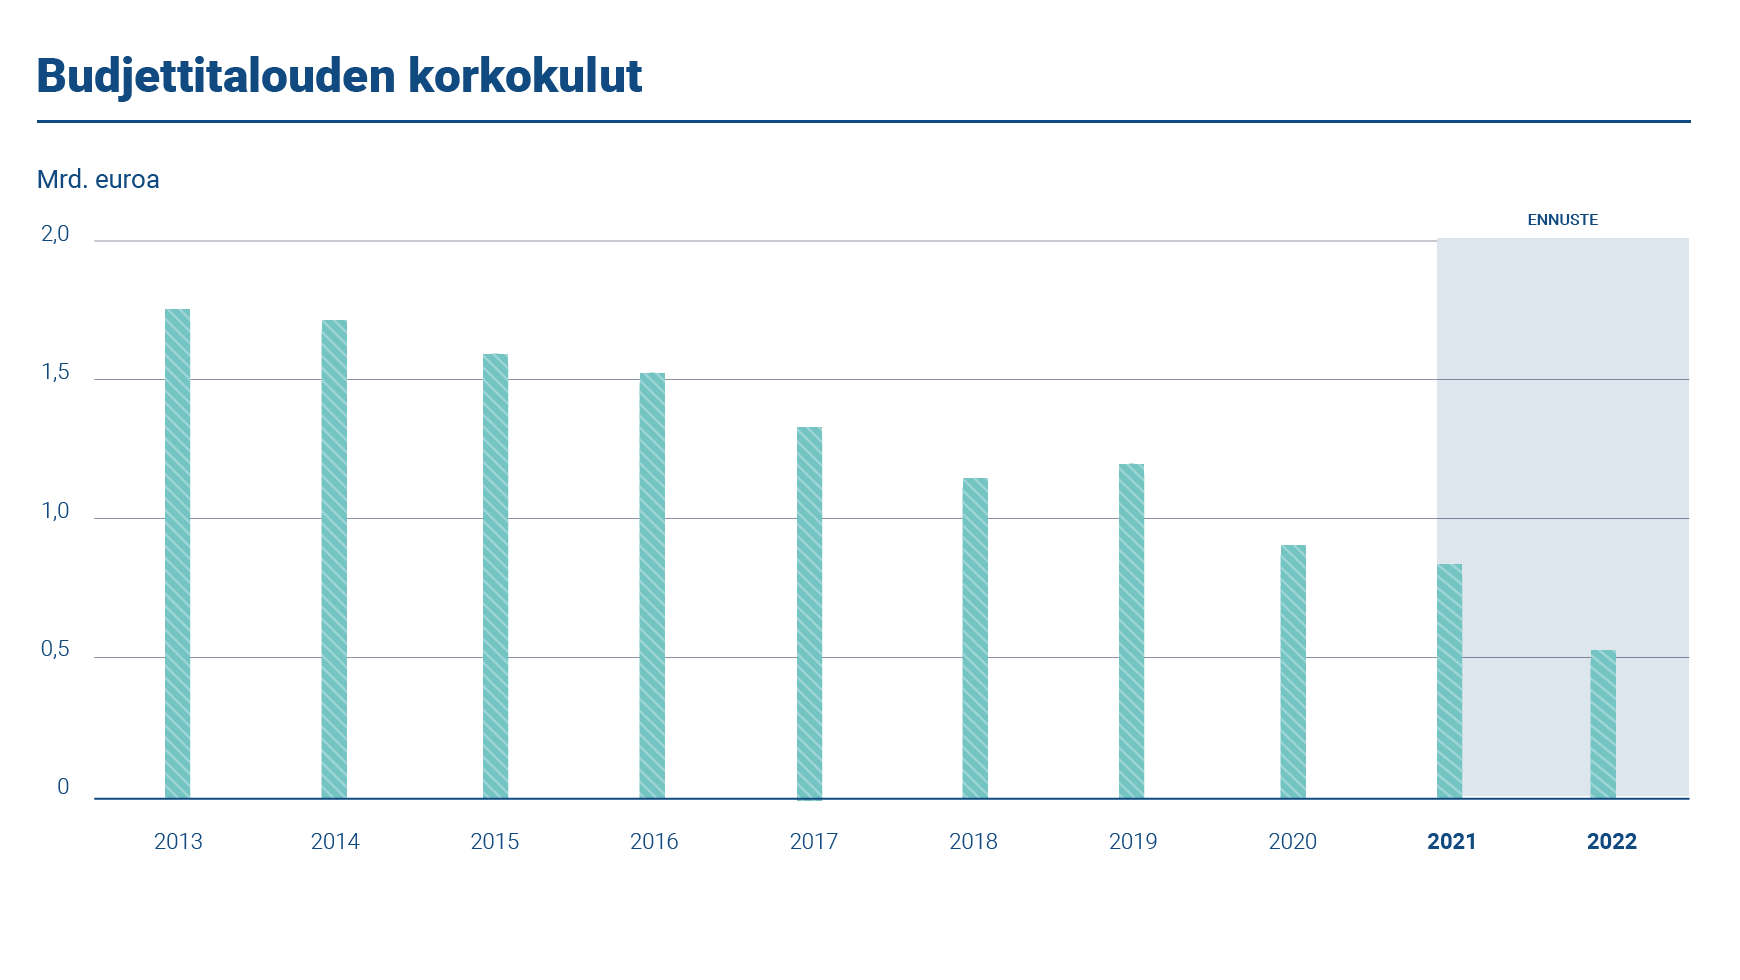 Kaaviossa esitetään budjettivelan vuosittaiset korkokulut vuosilta 2013–22. Korkokulut vuonna 2021 olivat 0,8 miljardia euroa. Ennuste vuodelle 2022 on 0,5 miljardia euroa.